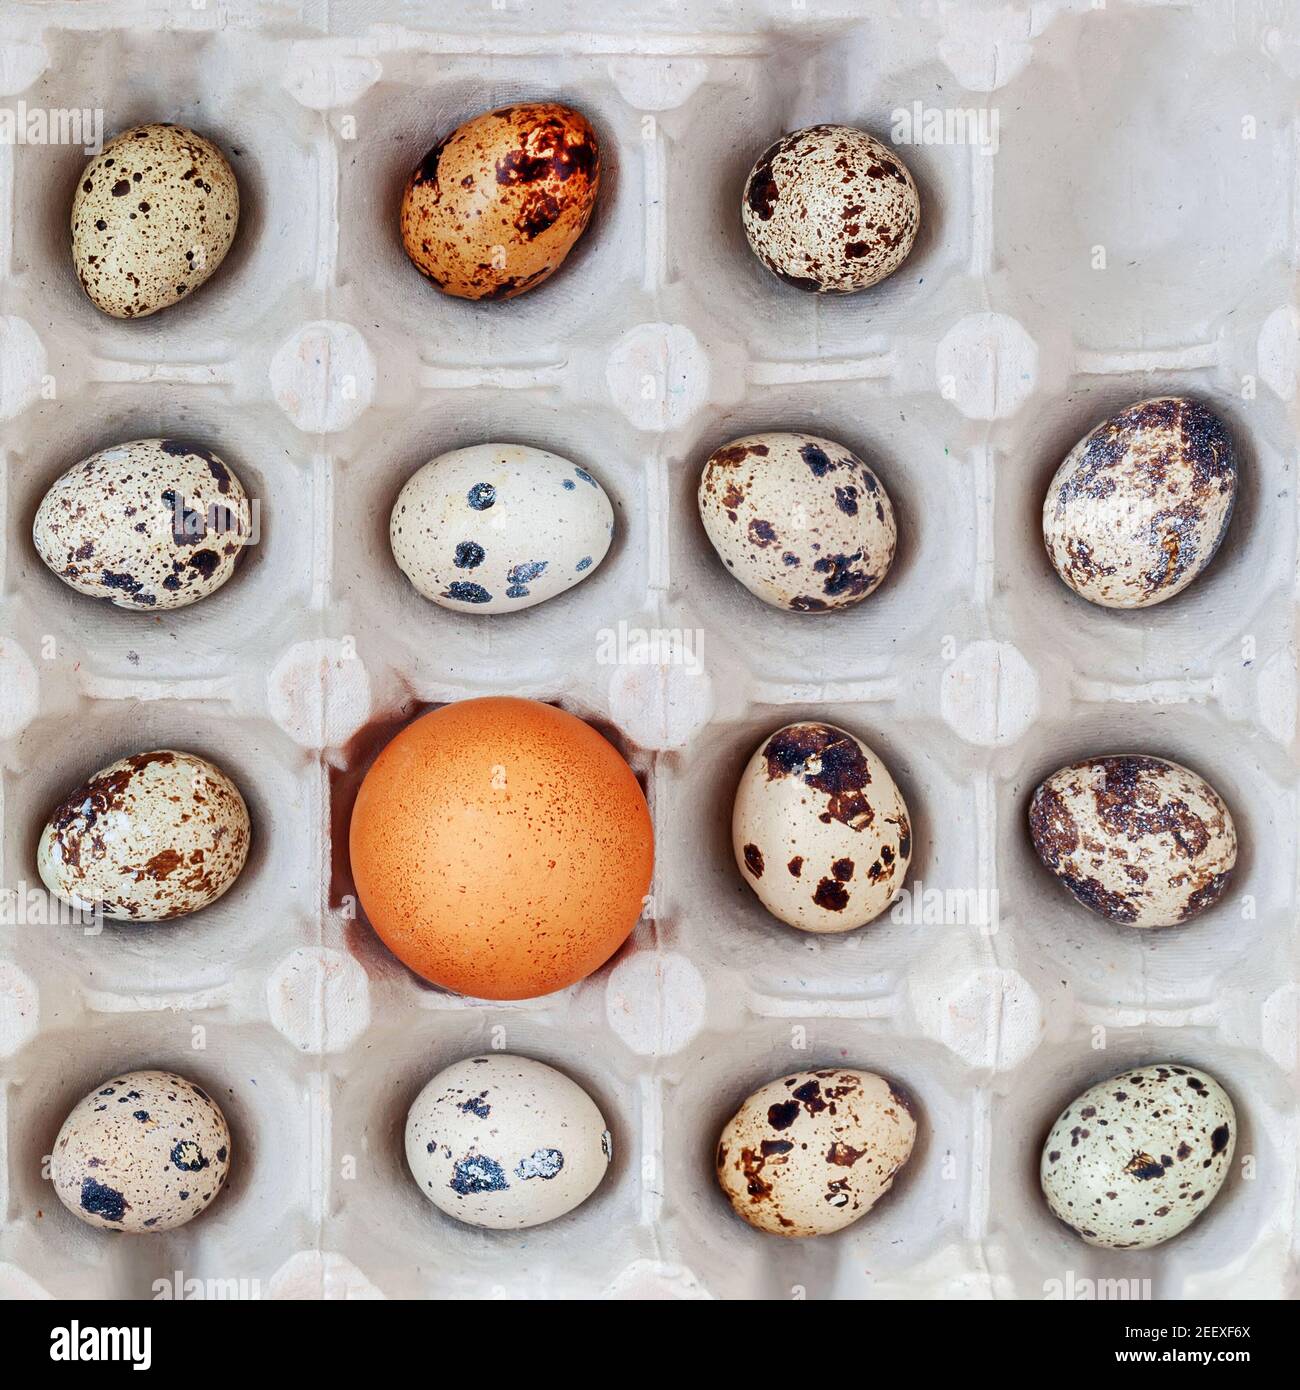 Un œuf de poulet parmi de nombreux œufs de caille dans une boîte en carton.  Vue de dessus. Concept d'accélération, d'individualité et de différence  Photo Stock - Alamy